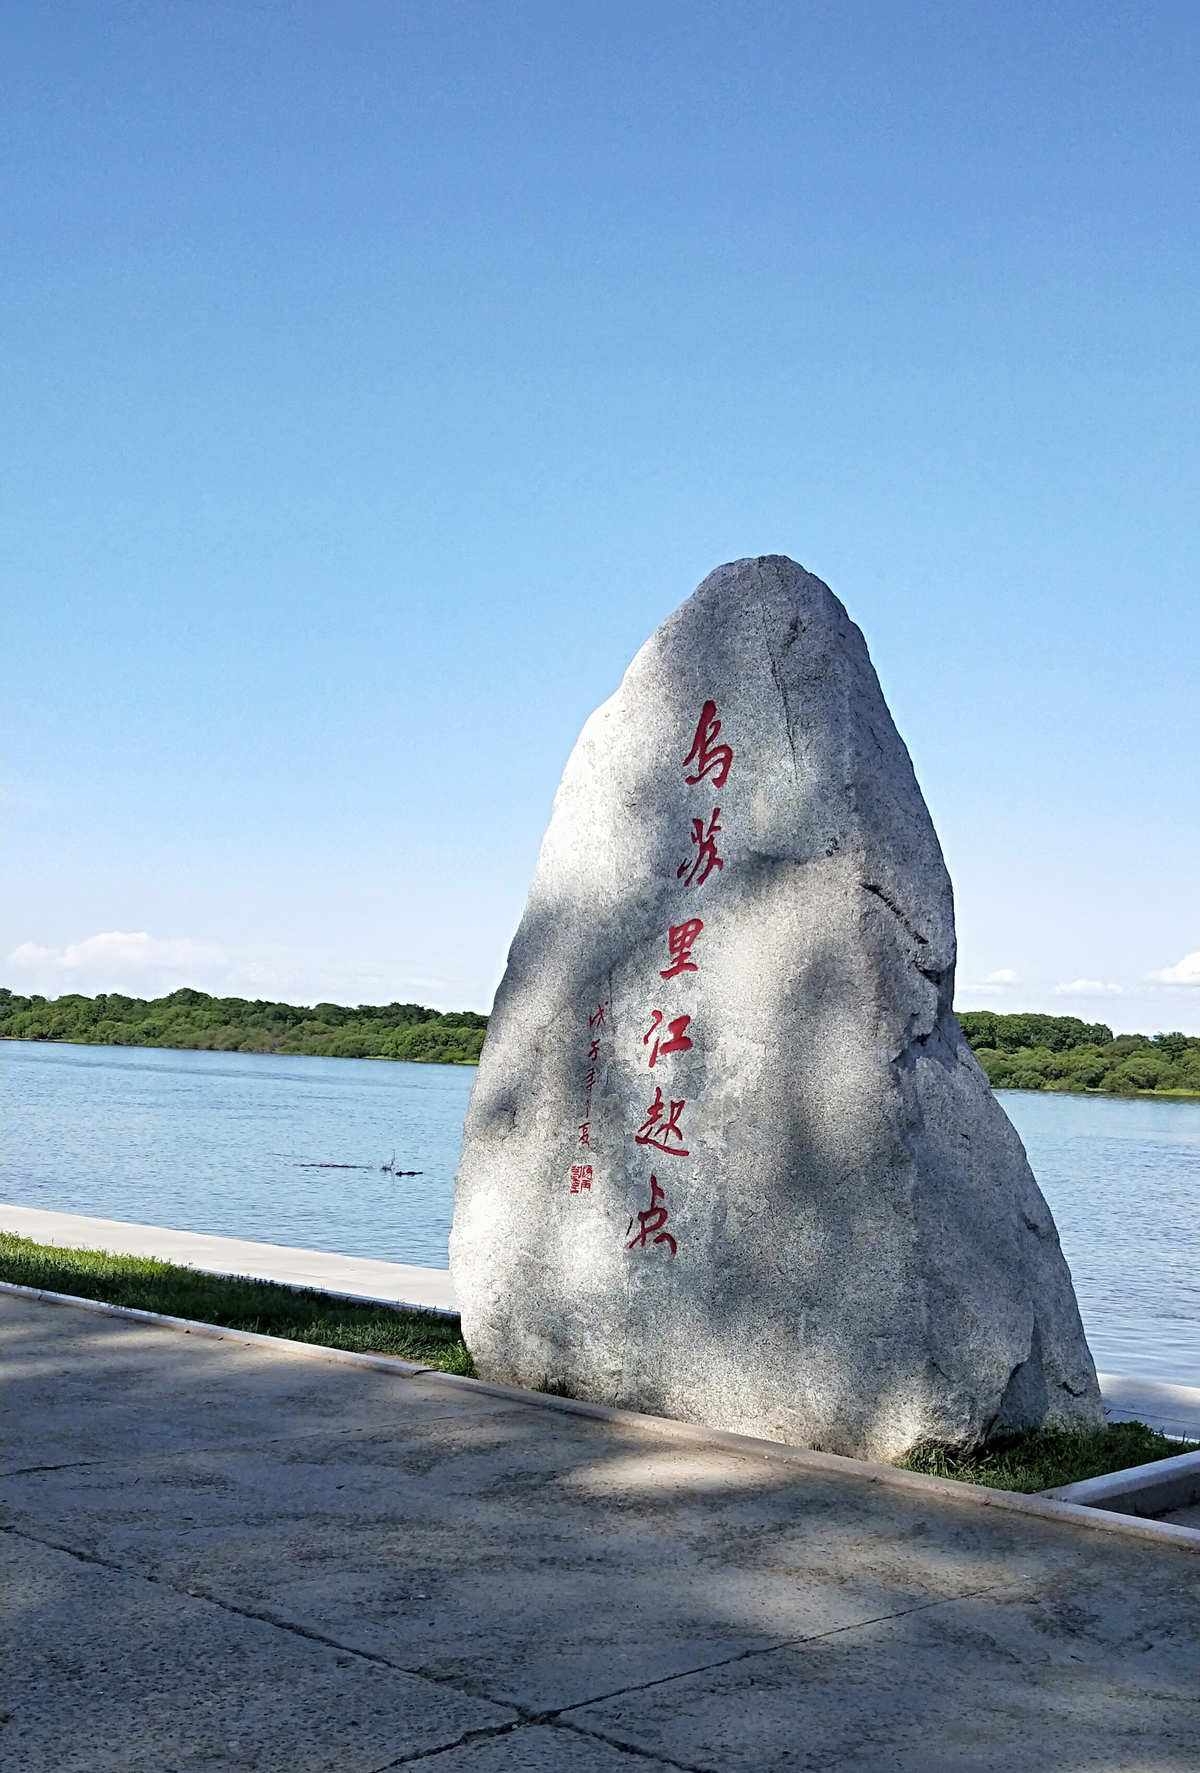 乌苏里江，黑龙江（阿穆尔河）支流，位于黑龙江省东部。唐称“安居骨水”，金称“阿里门河”，元称“忽吕古